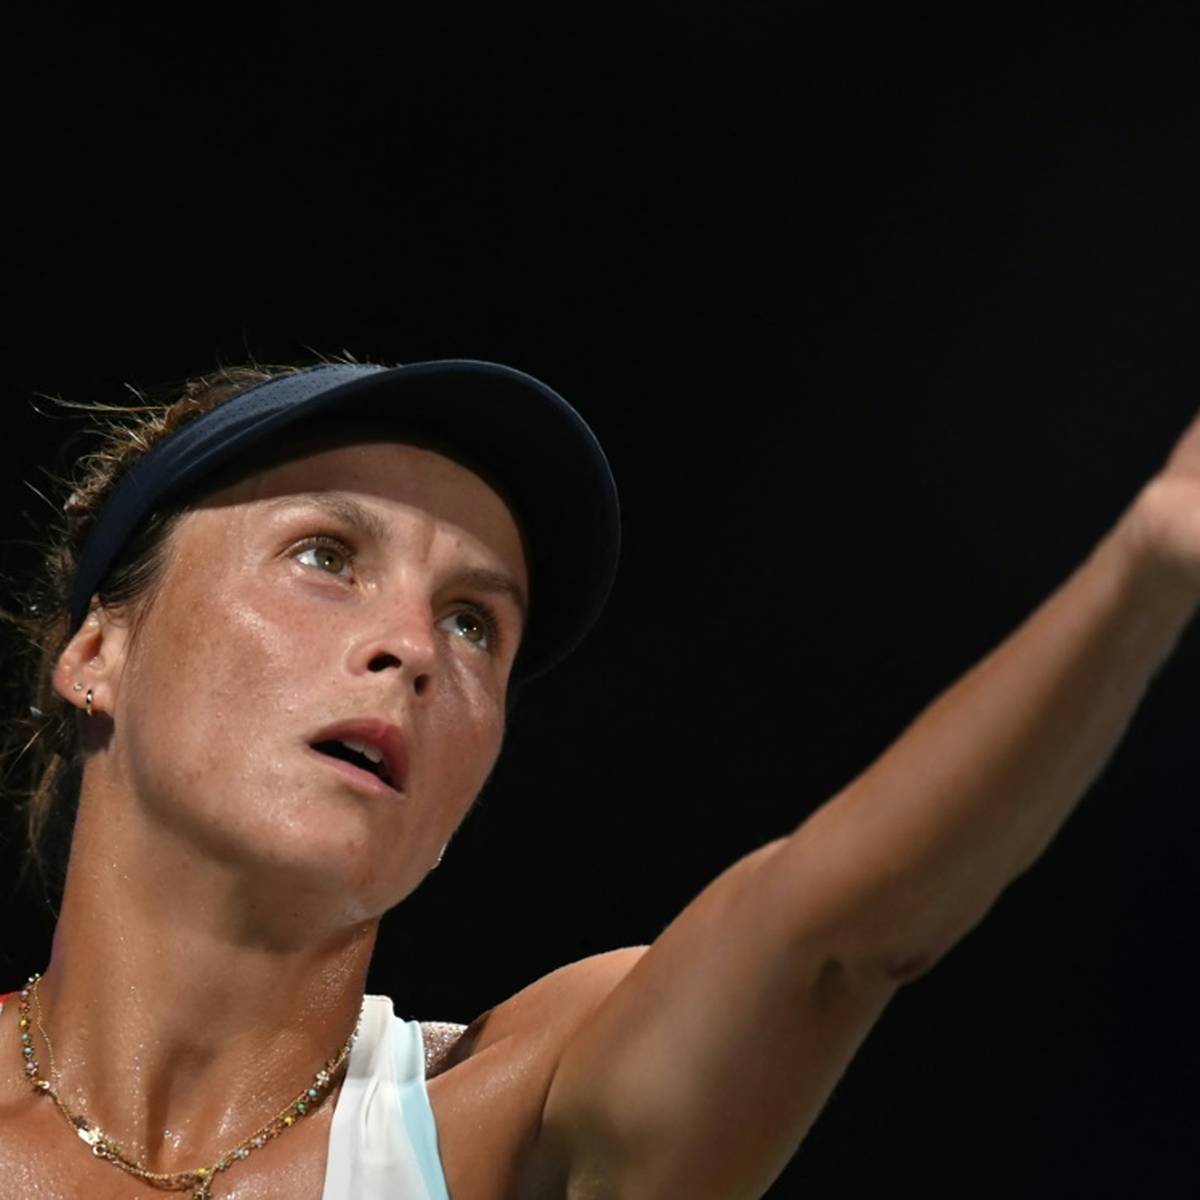 Australian Open Partien von Maria und Siegemund gestrichen nach Wetter-Chaos